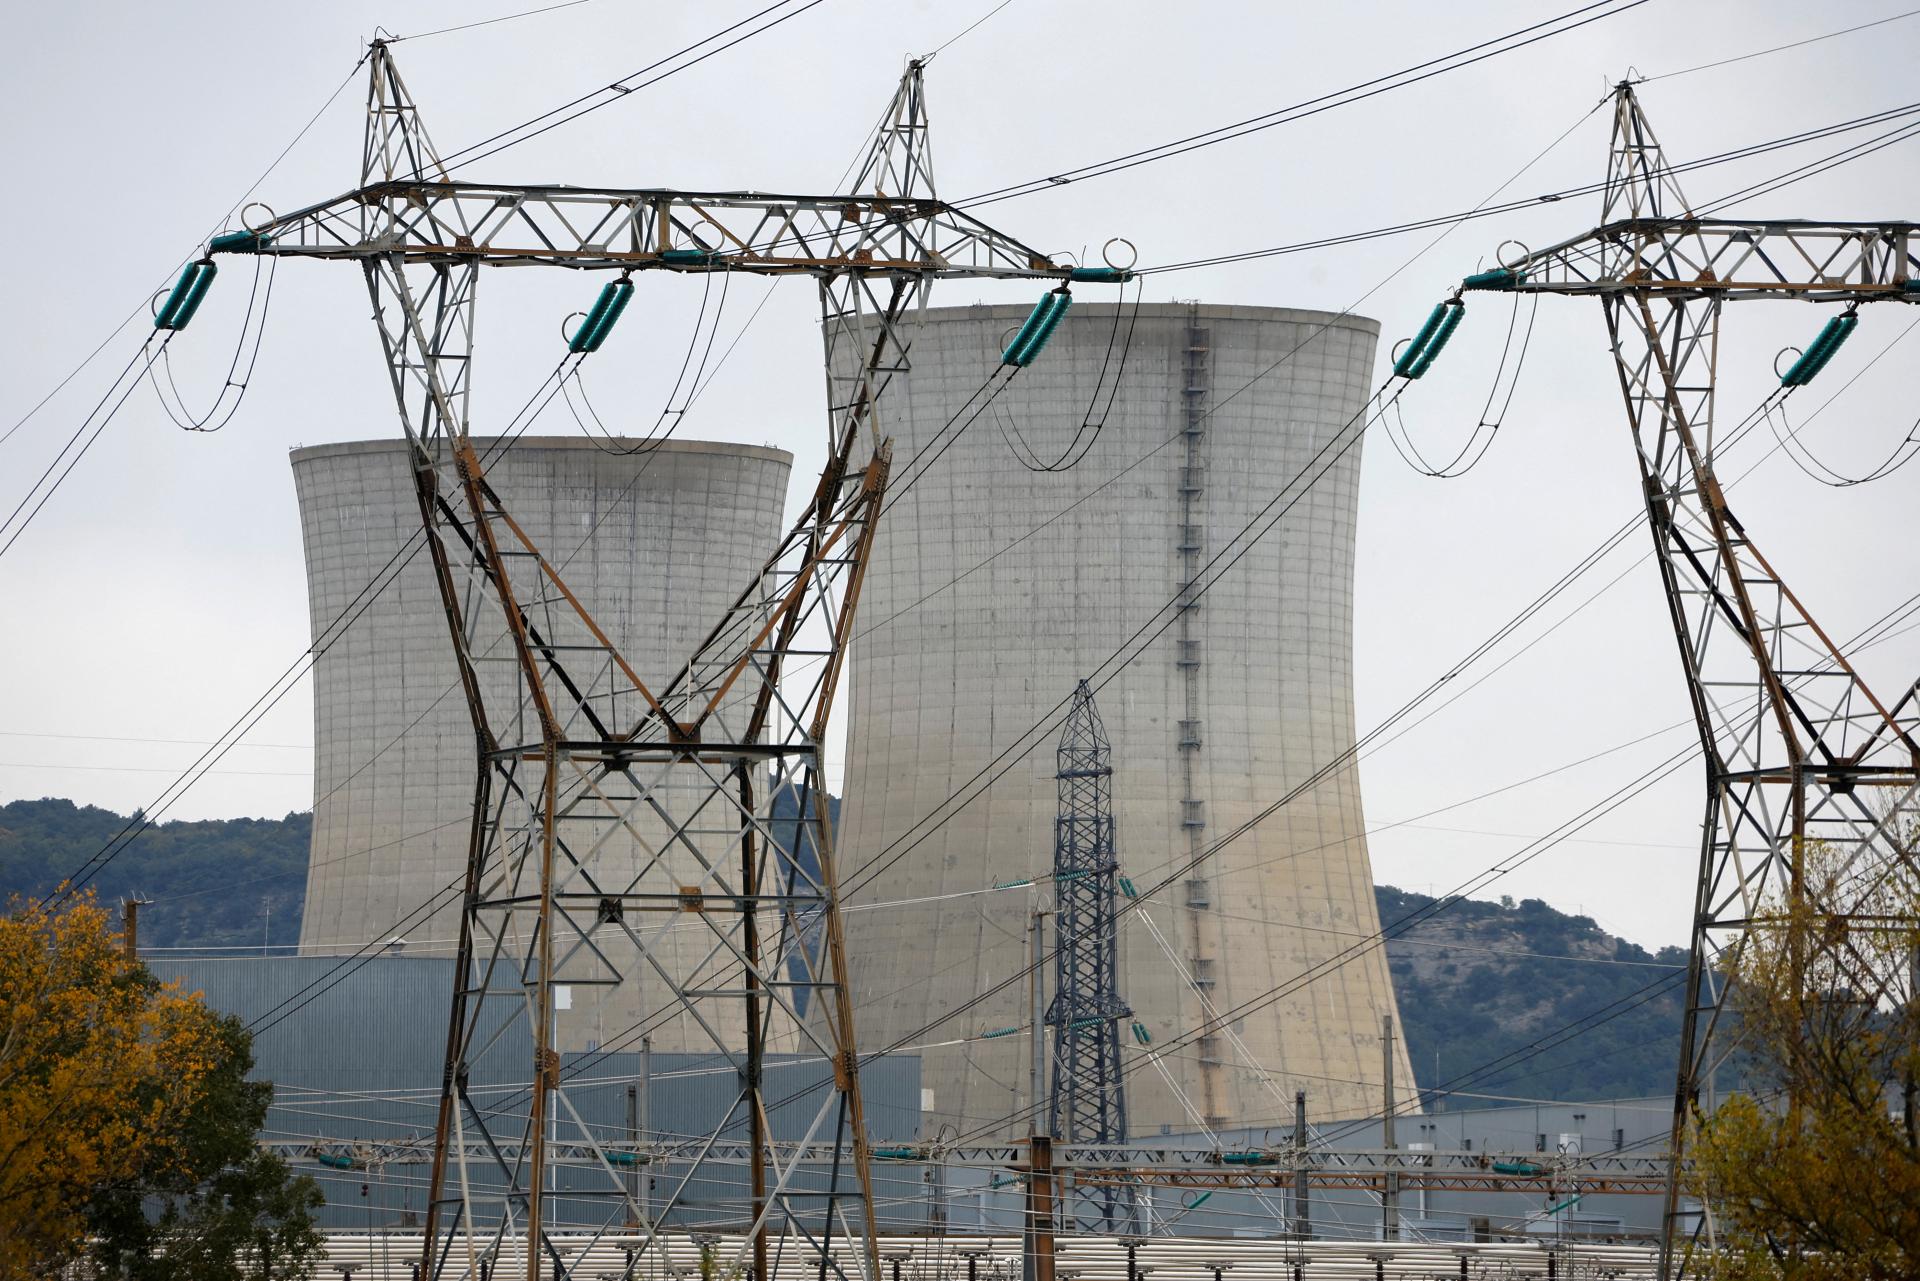 Produkcia francúzskych jadrových elektrární je ohrozená. Sú chrbticou európskeho energetického systému